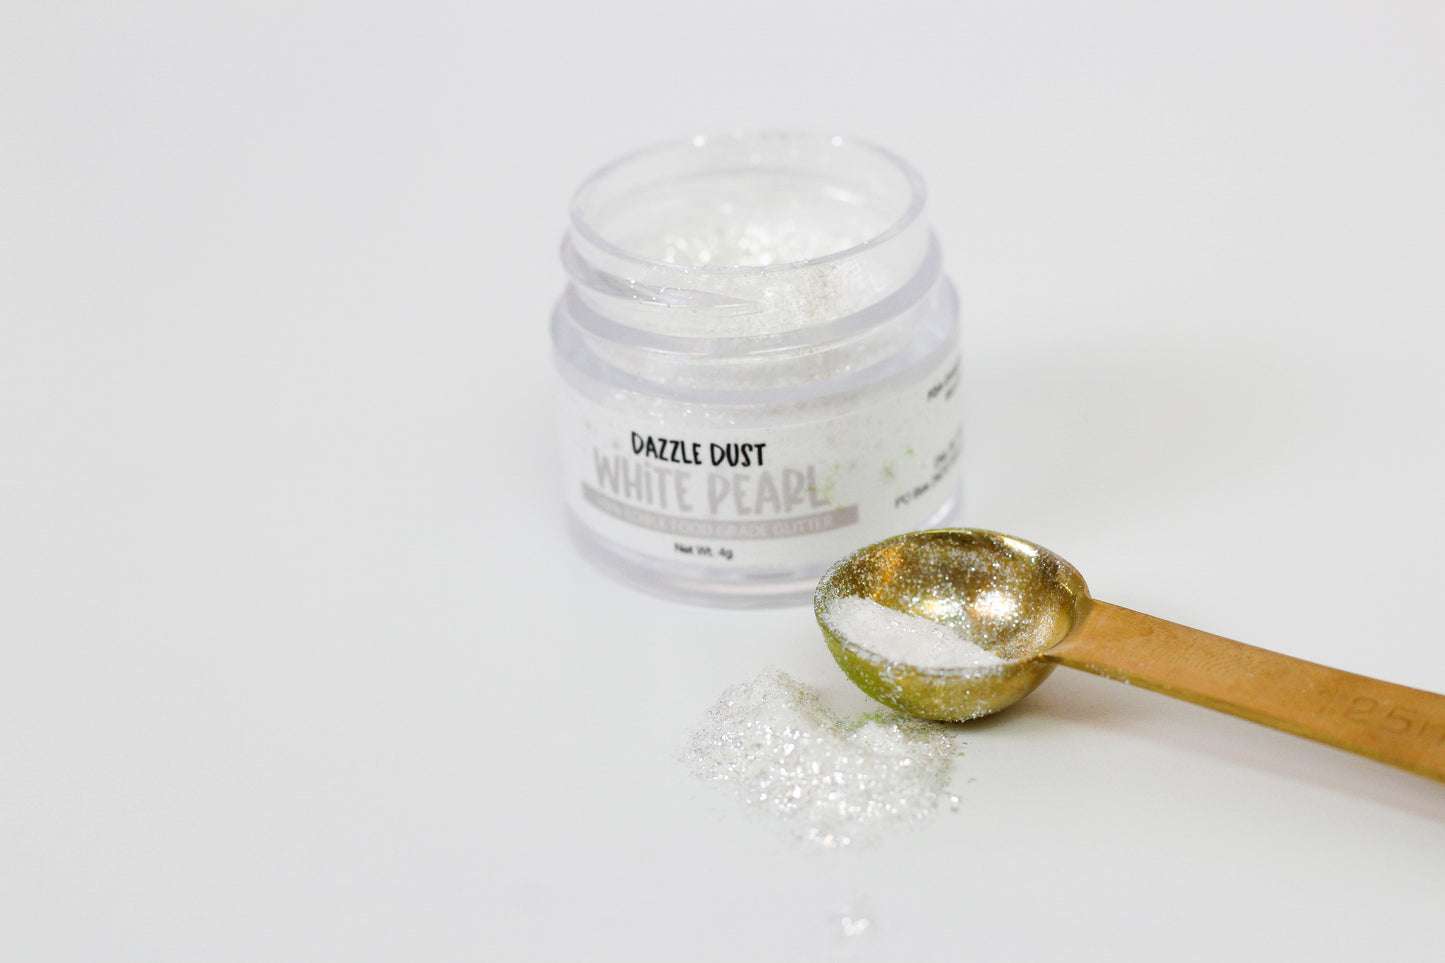 Pearl White Dazzle Dust - Edible Glitter